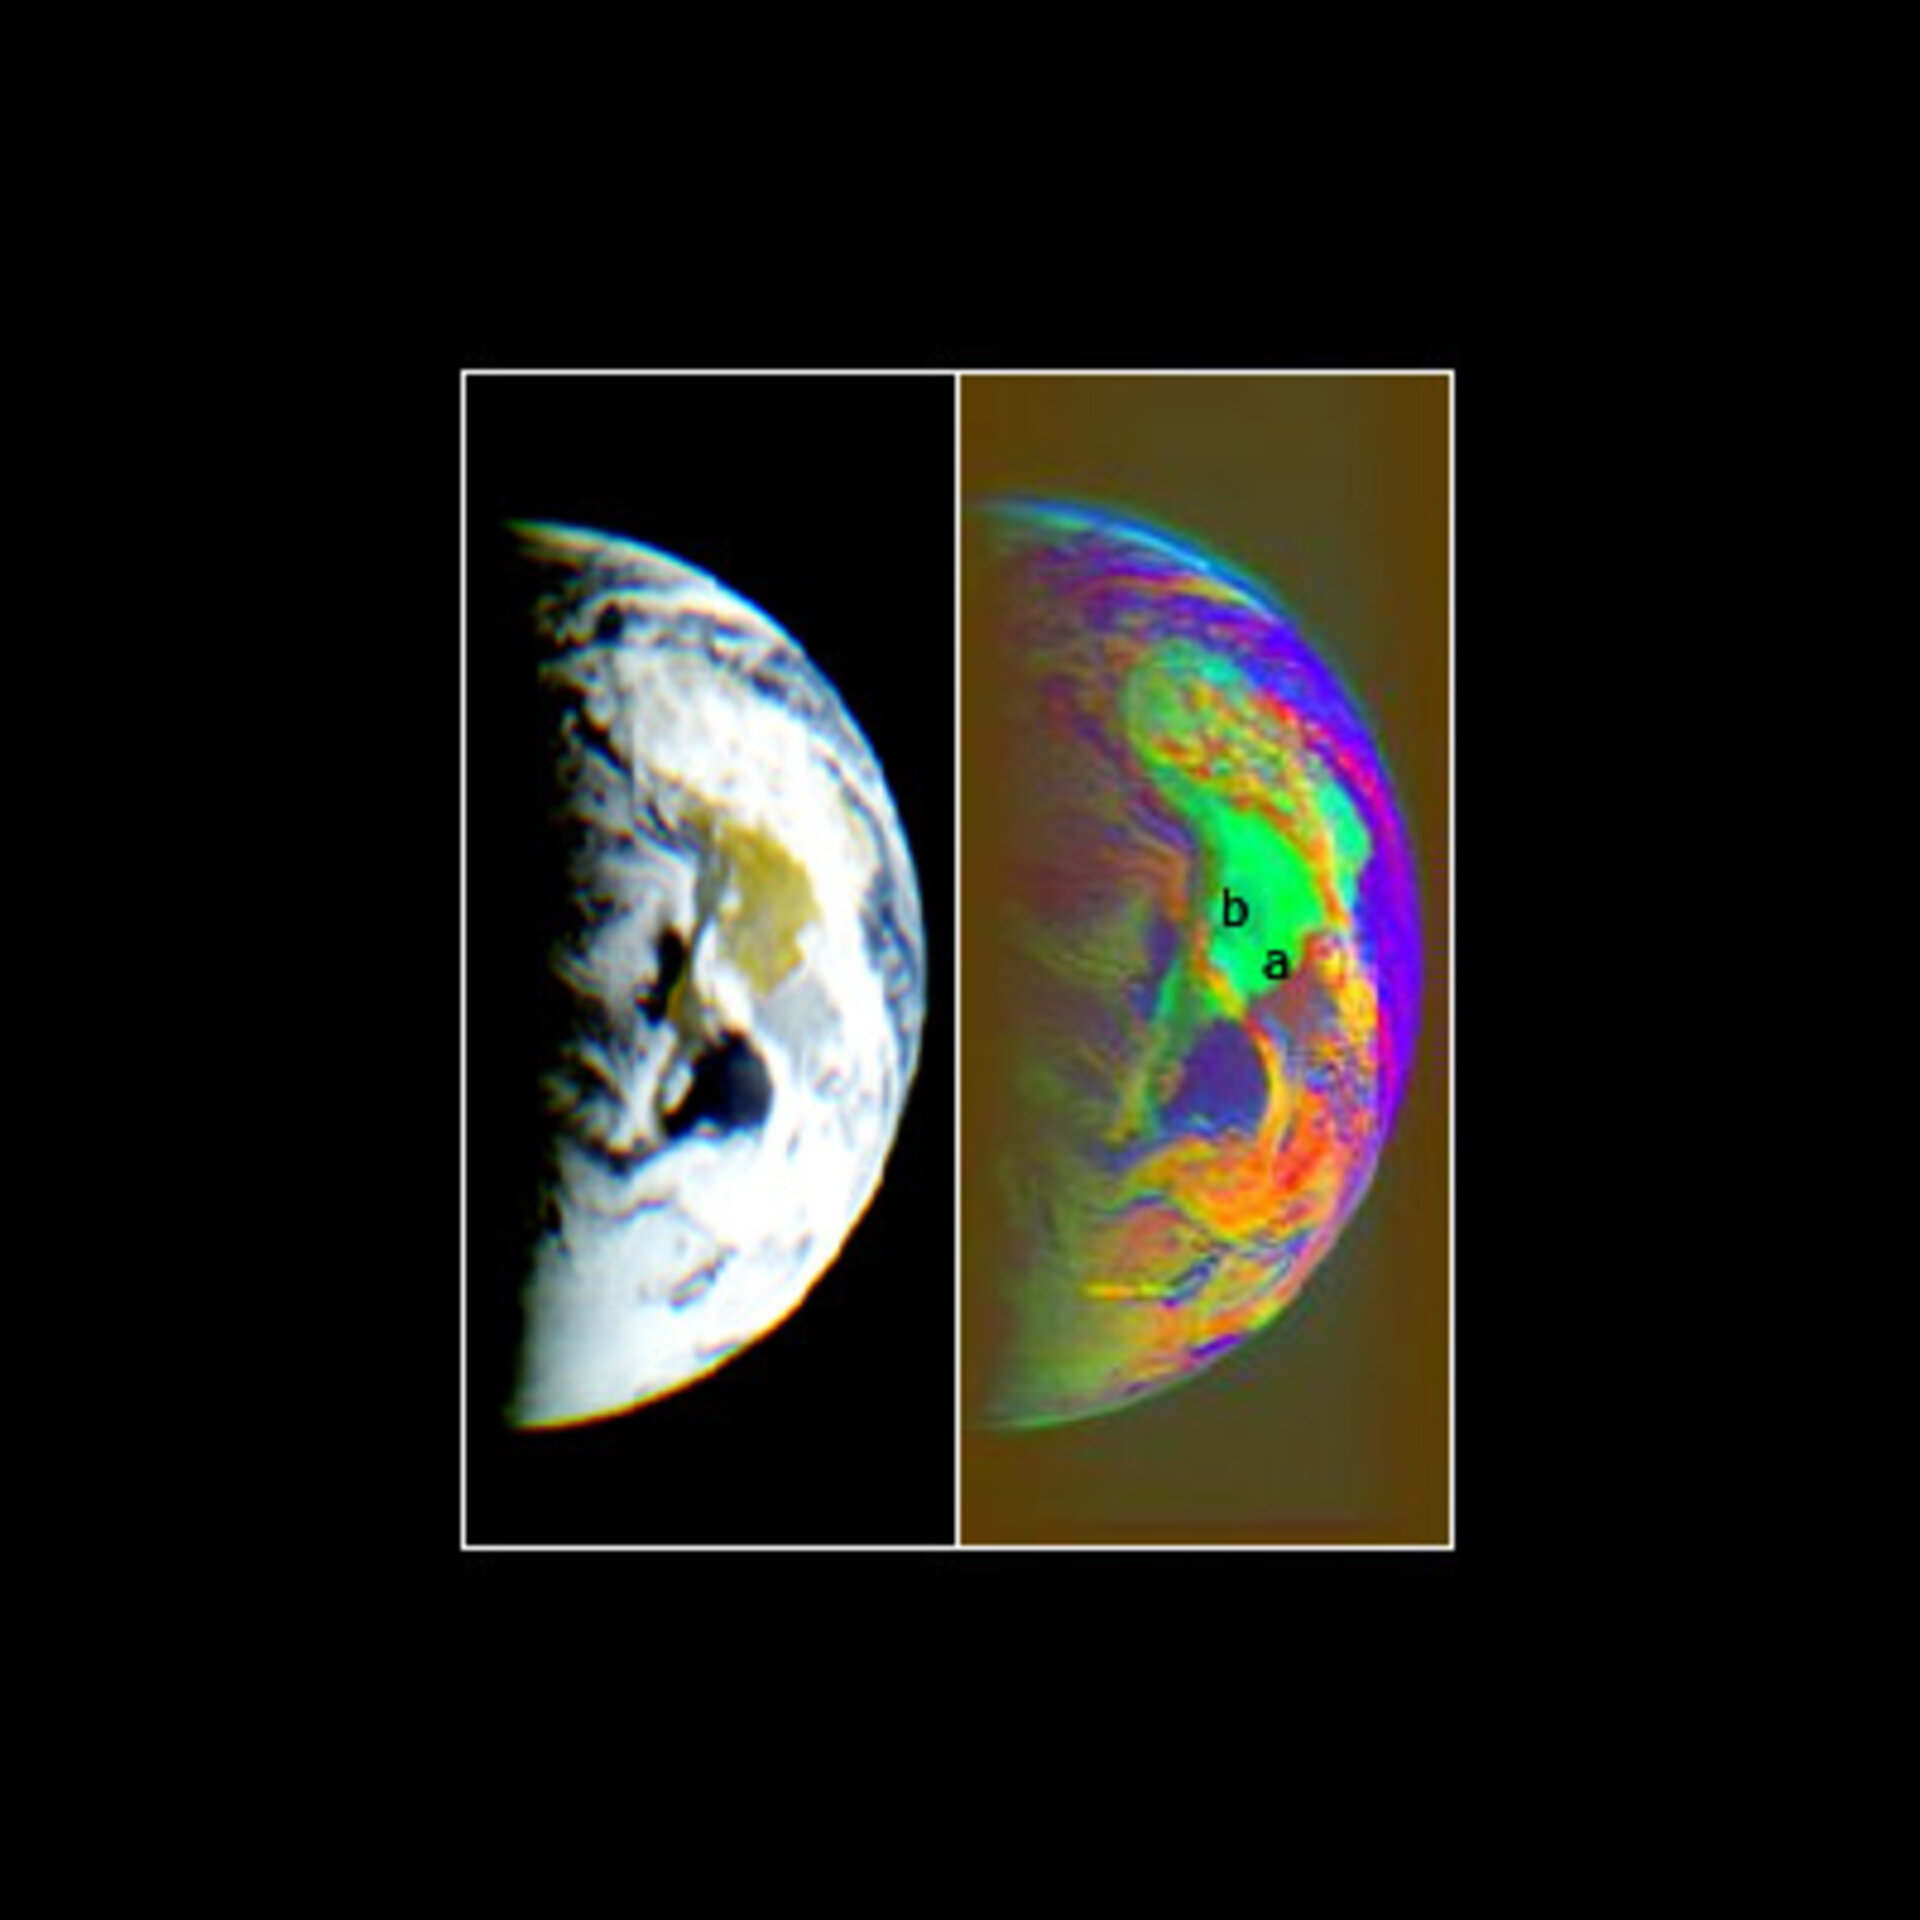 Jorden fotograferet af Rosetta ved passagen for nyligt. Gengivet både i naturtro og kunstige farver.